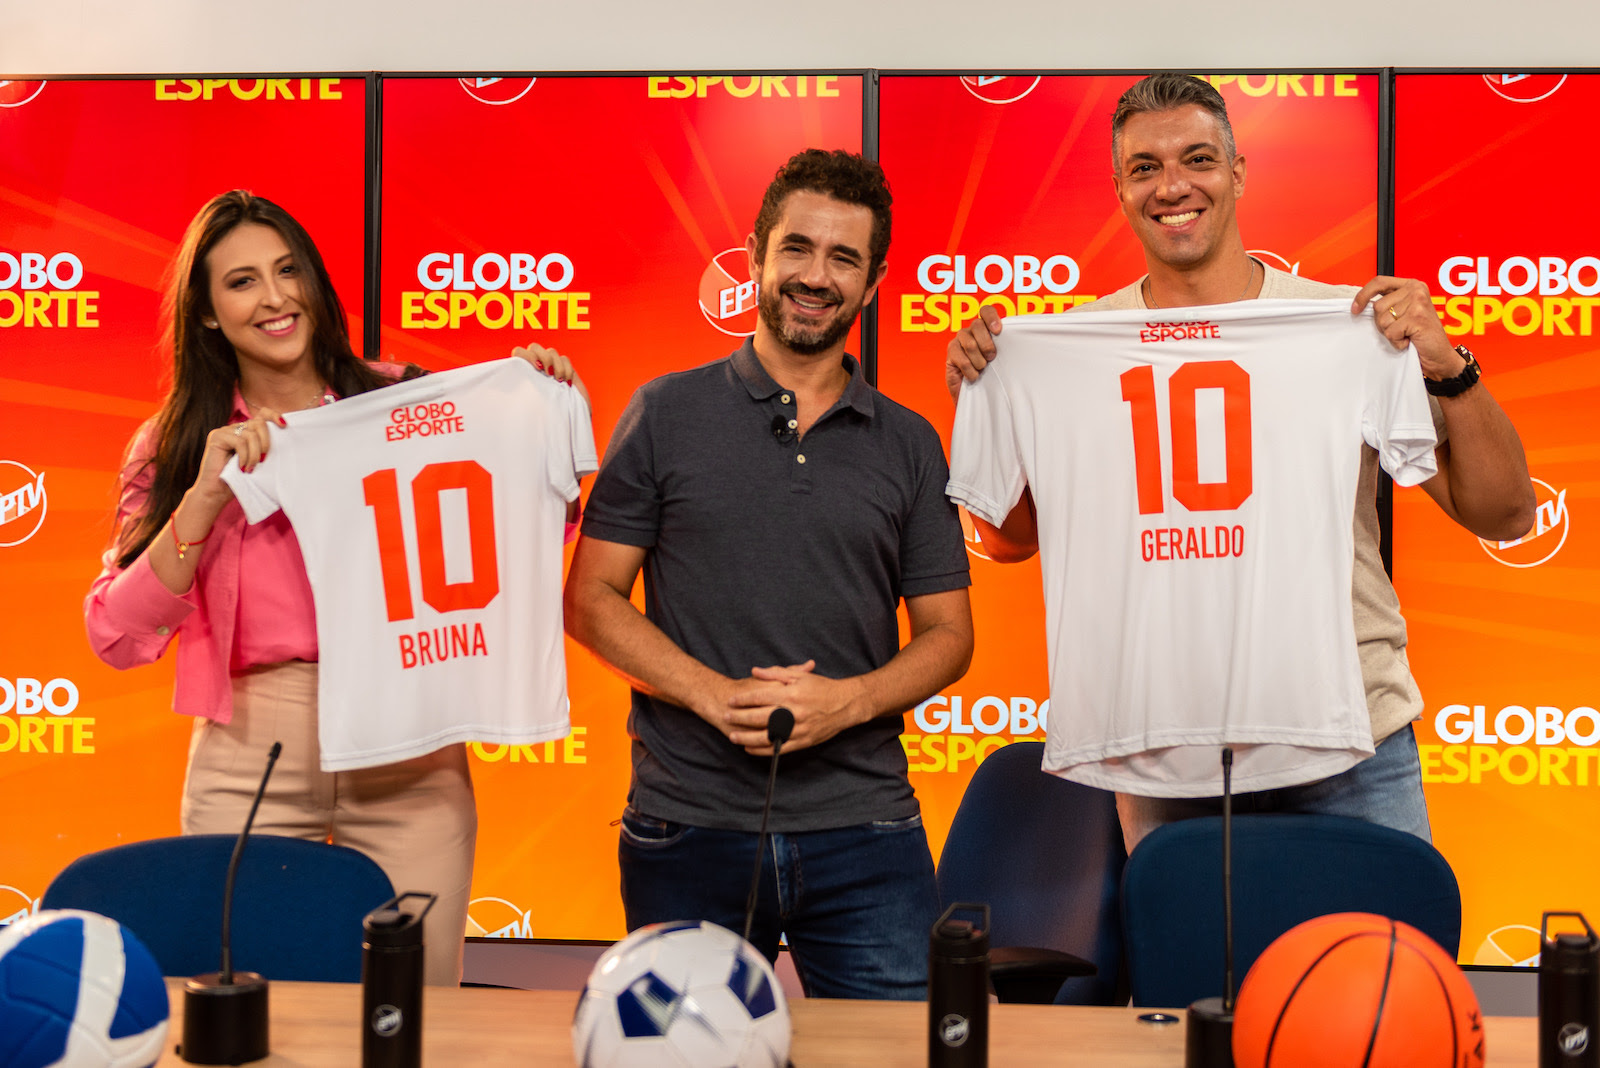 EPTV anuncia produção local do Globo Esporte